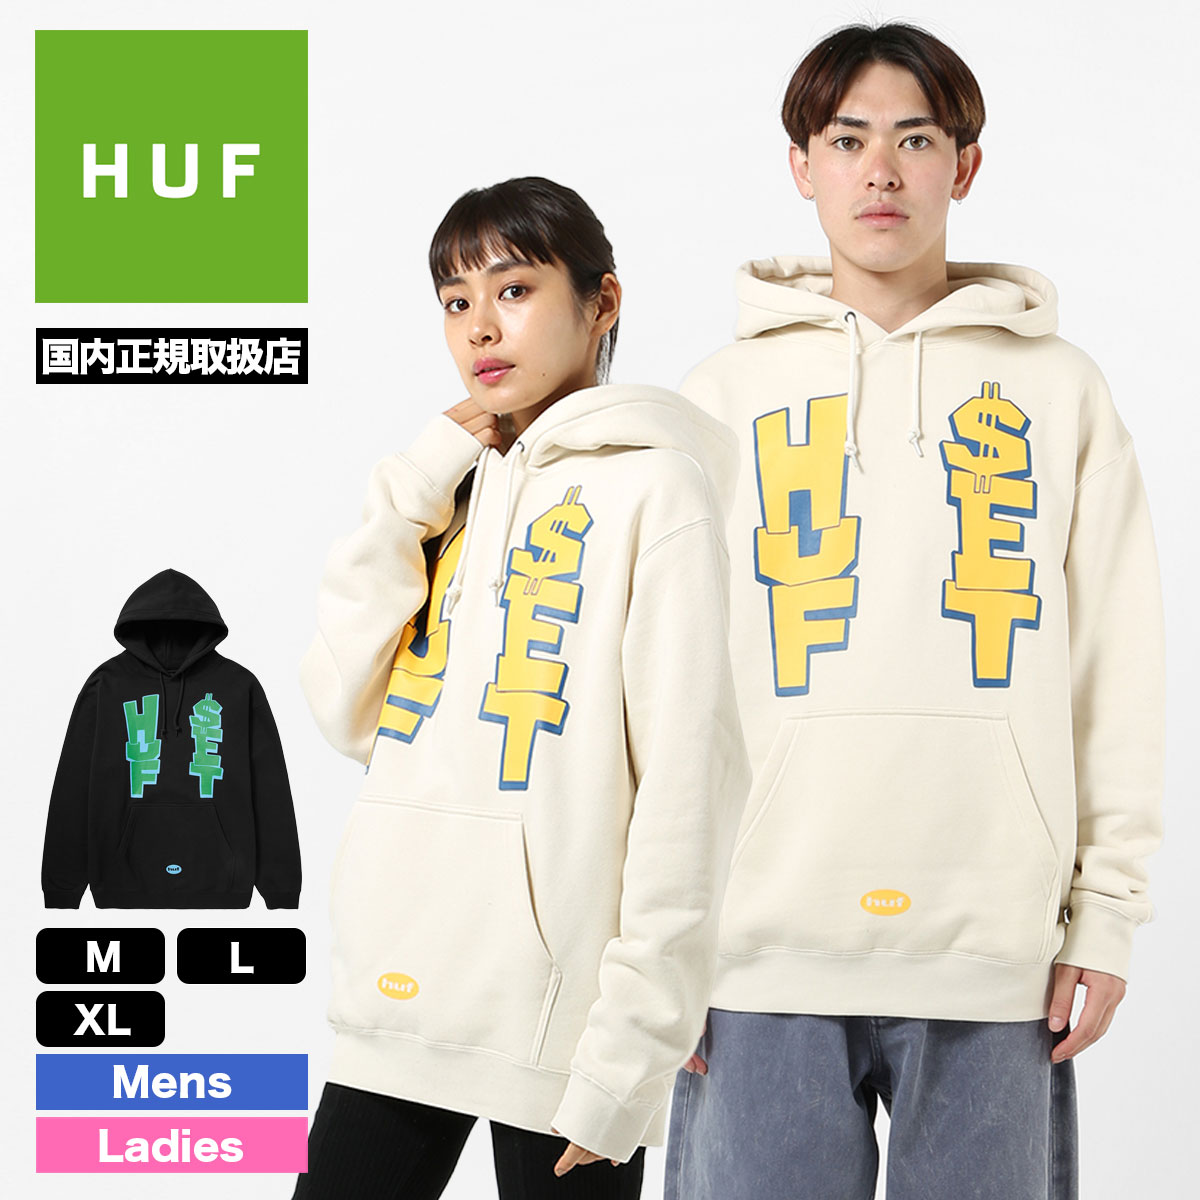 トップス【HUF】Huf スウェットパーカー